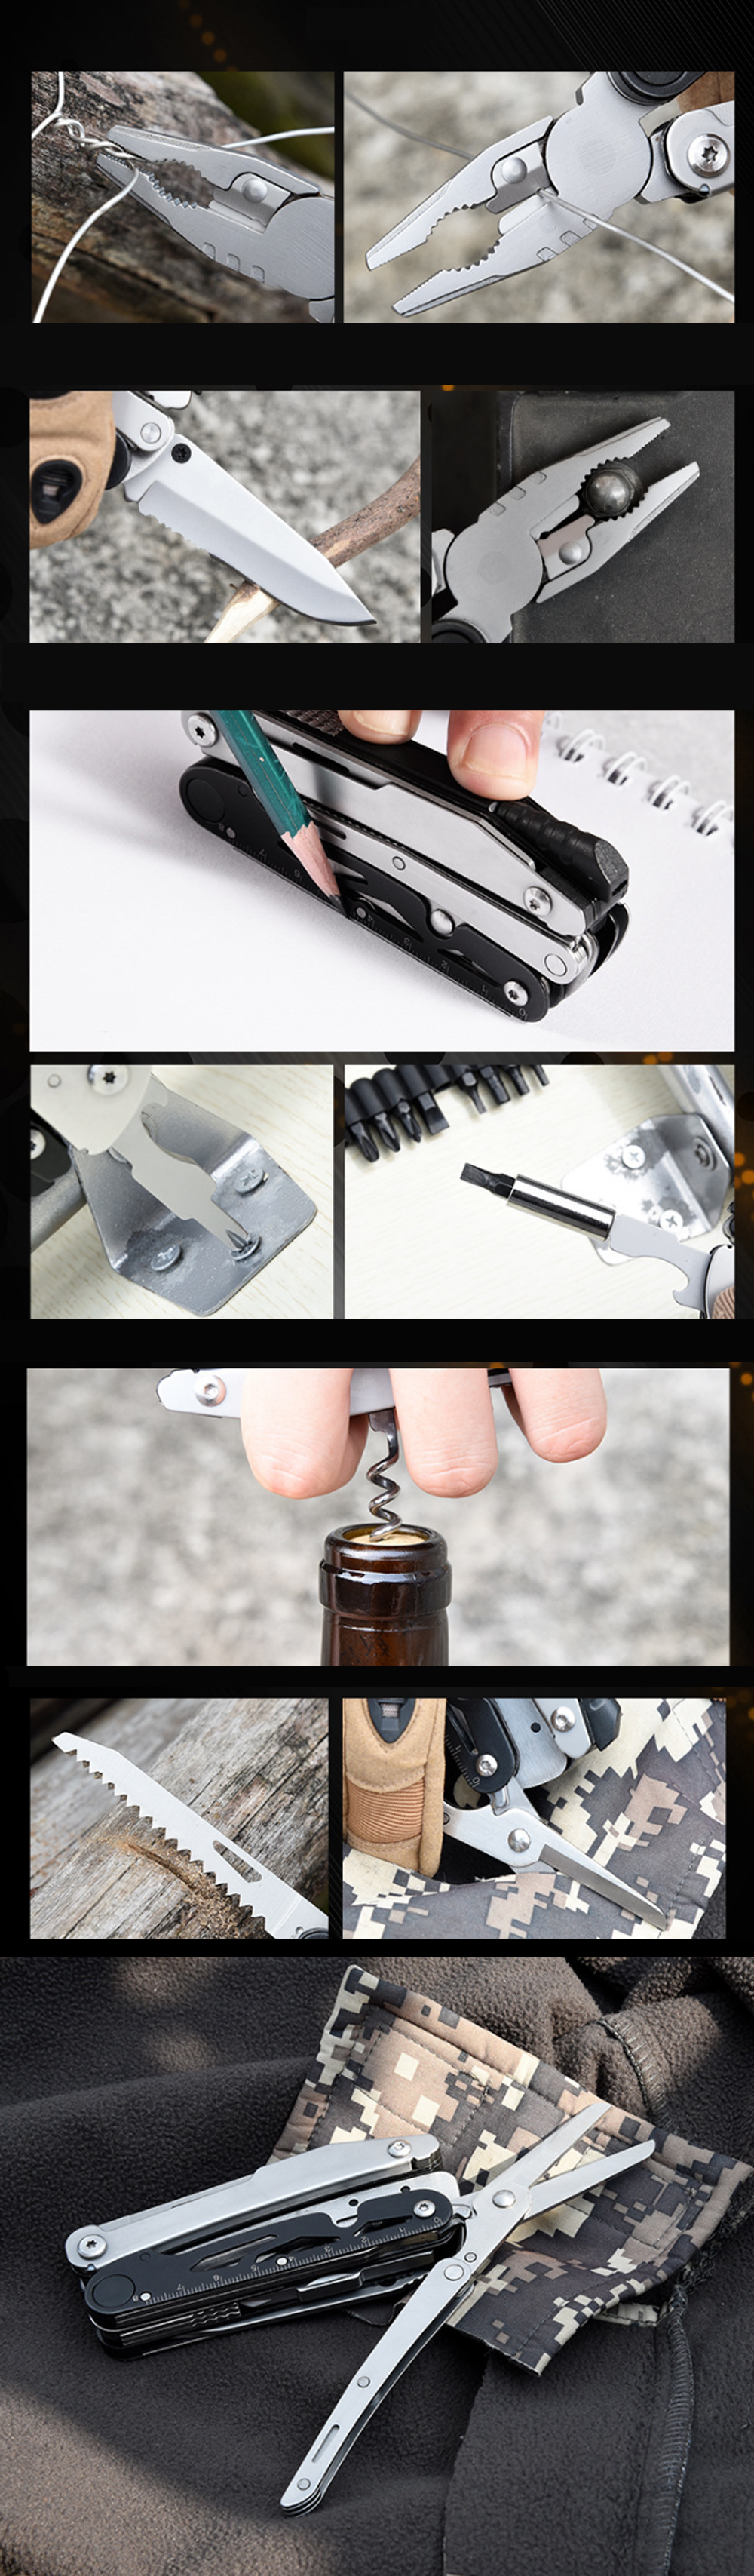 SEEKNITE-10-in-1-Multi-function-Folding-Pliers-Bottle-Opener-Scissors-Screwdriver-Saw-Combination-Kn-1752432-3